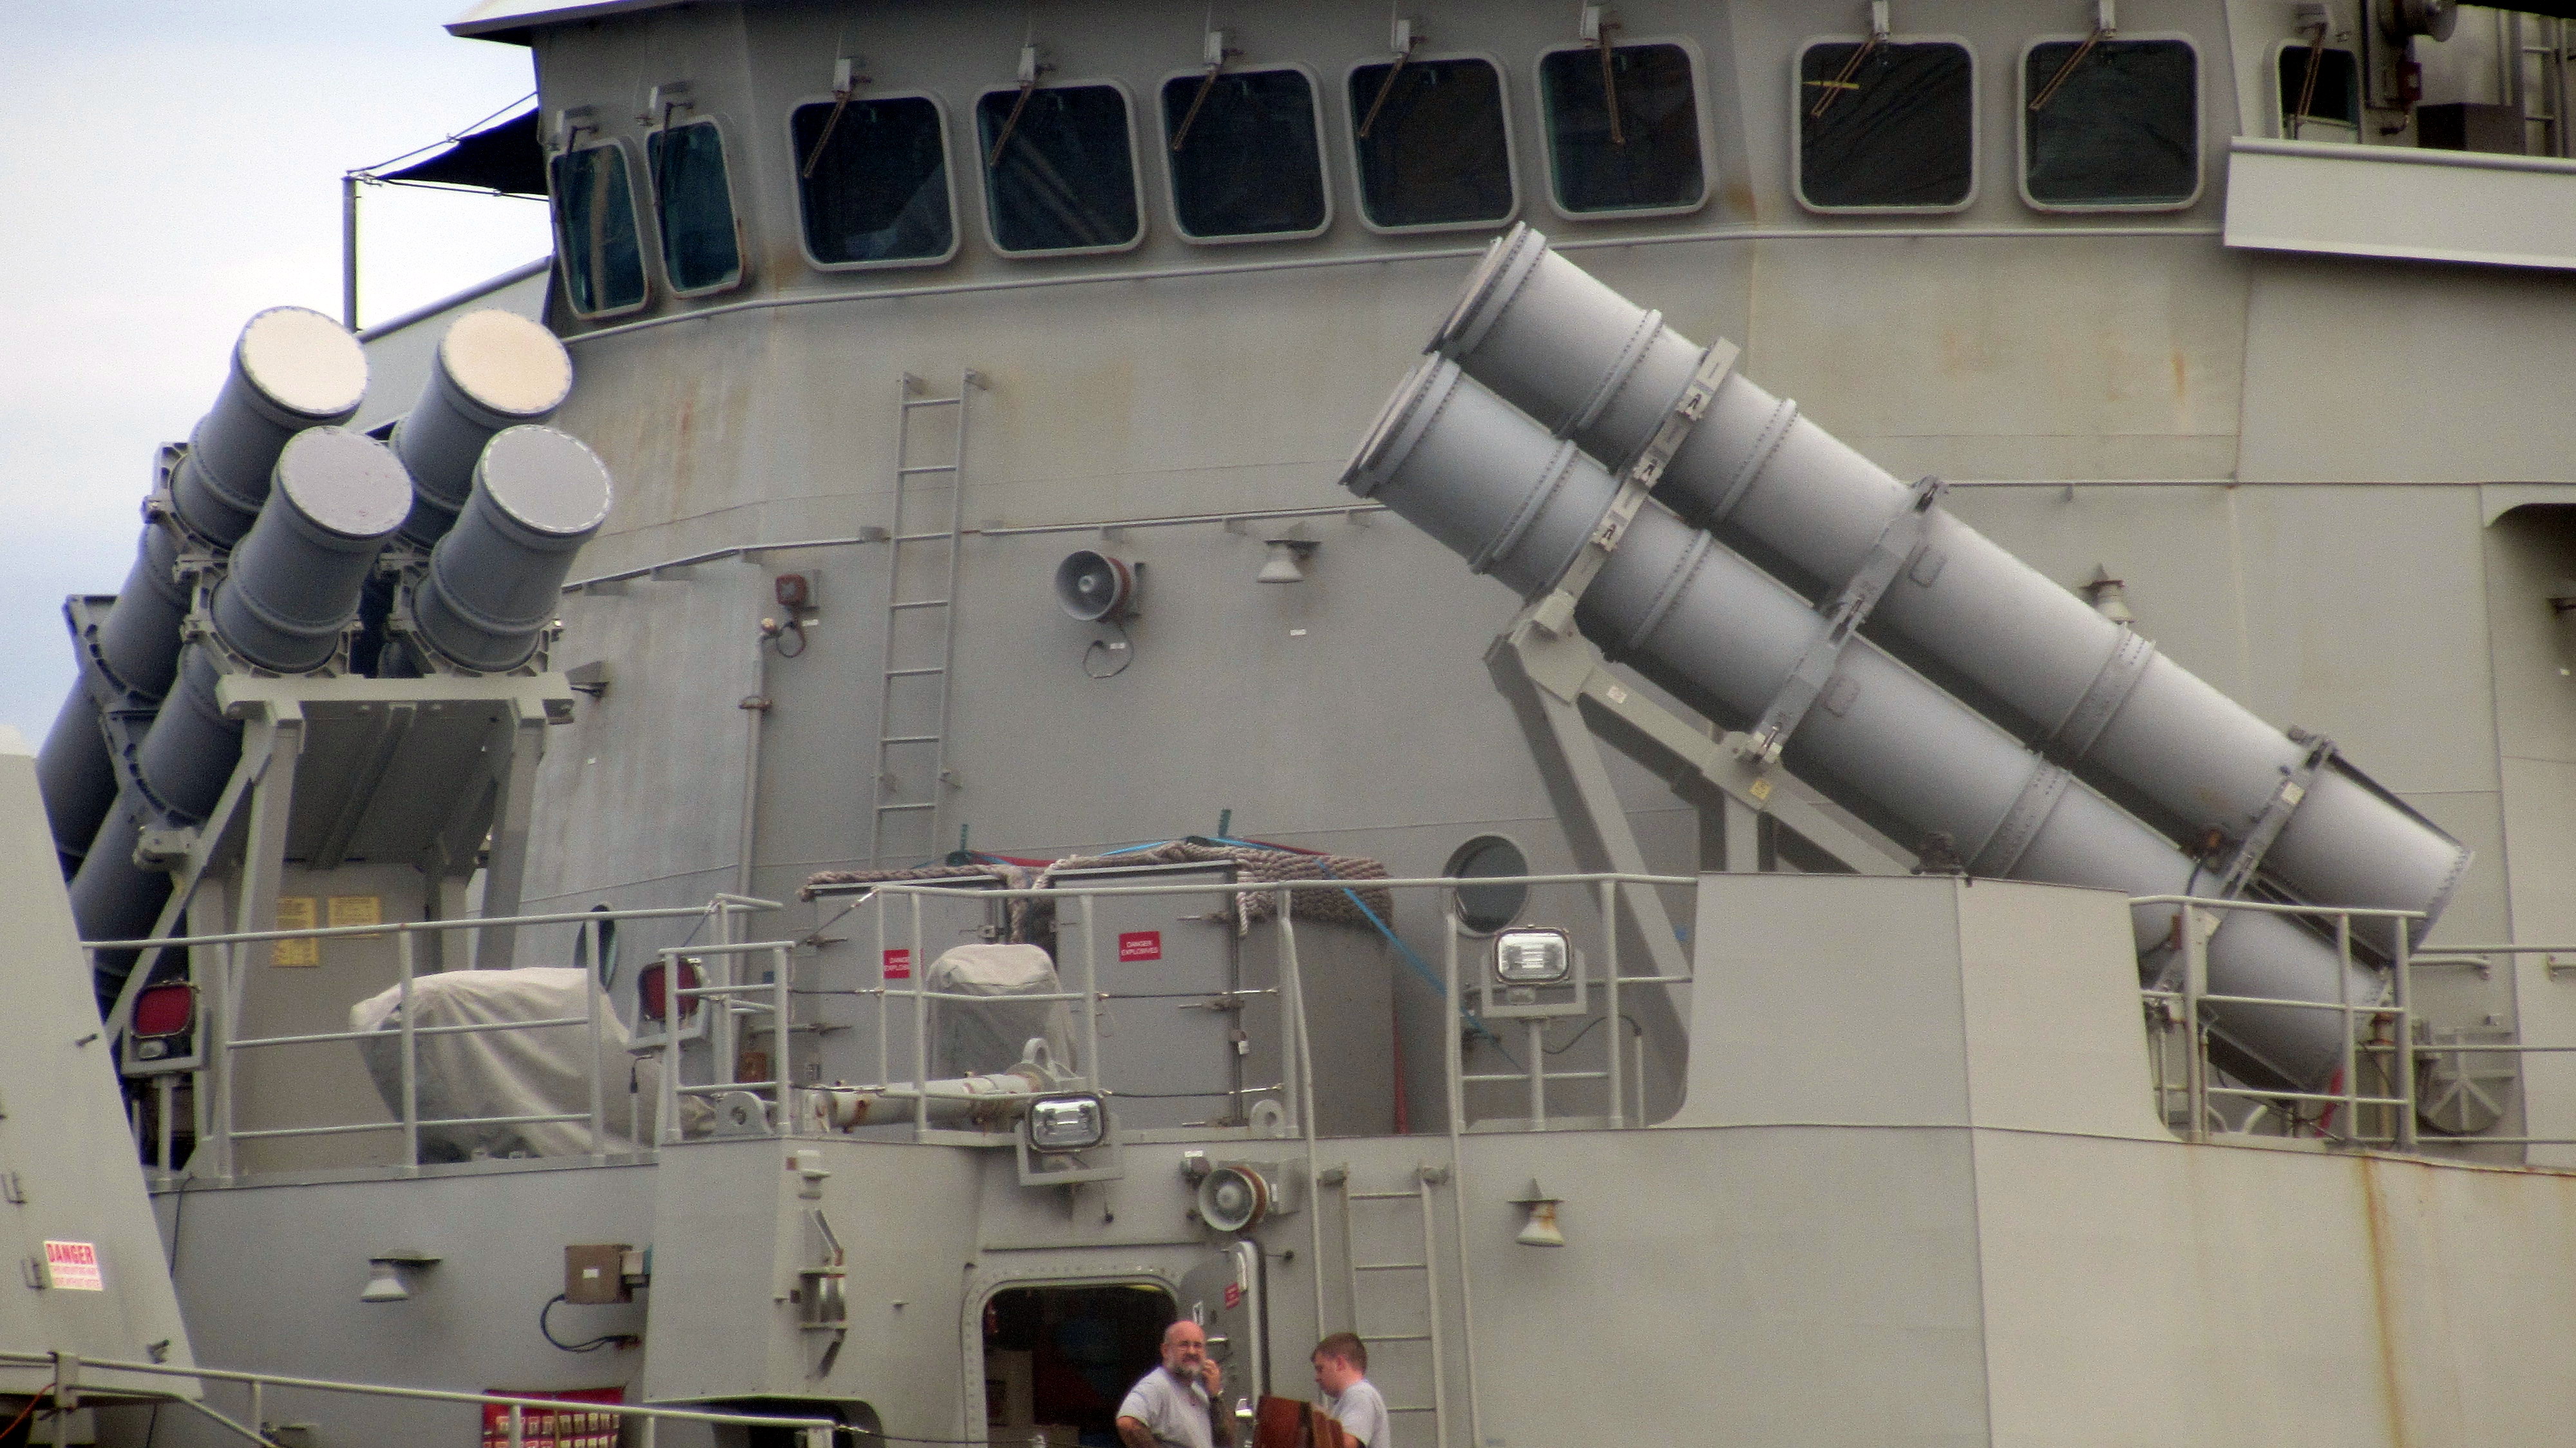 Így néz ki a Harpoon indítóállványa az ausztrál haditengerészet egyik hajóján